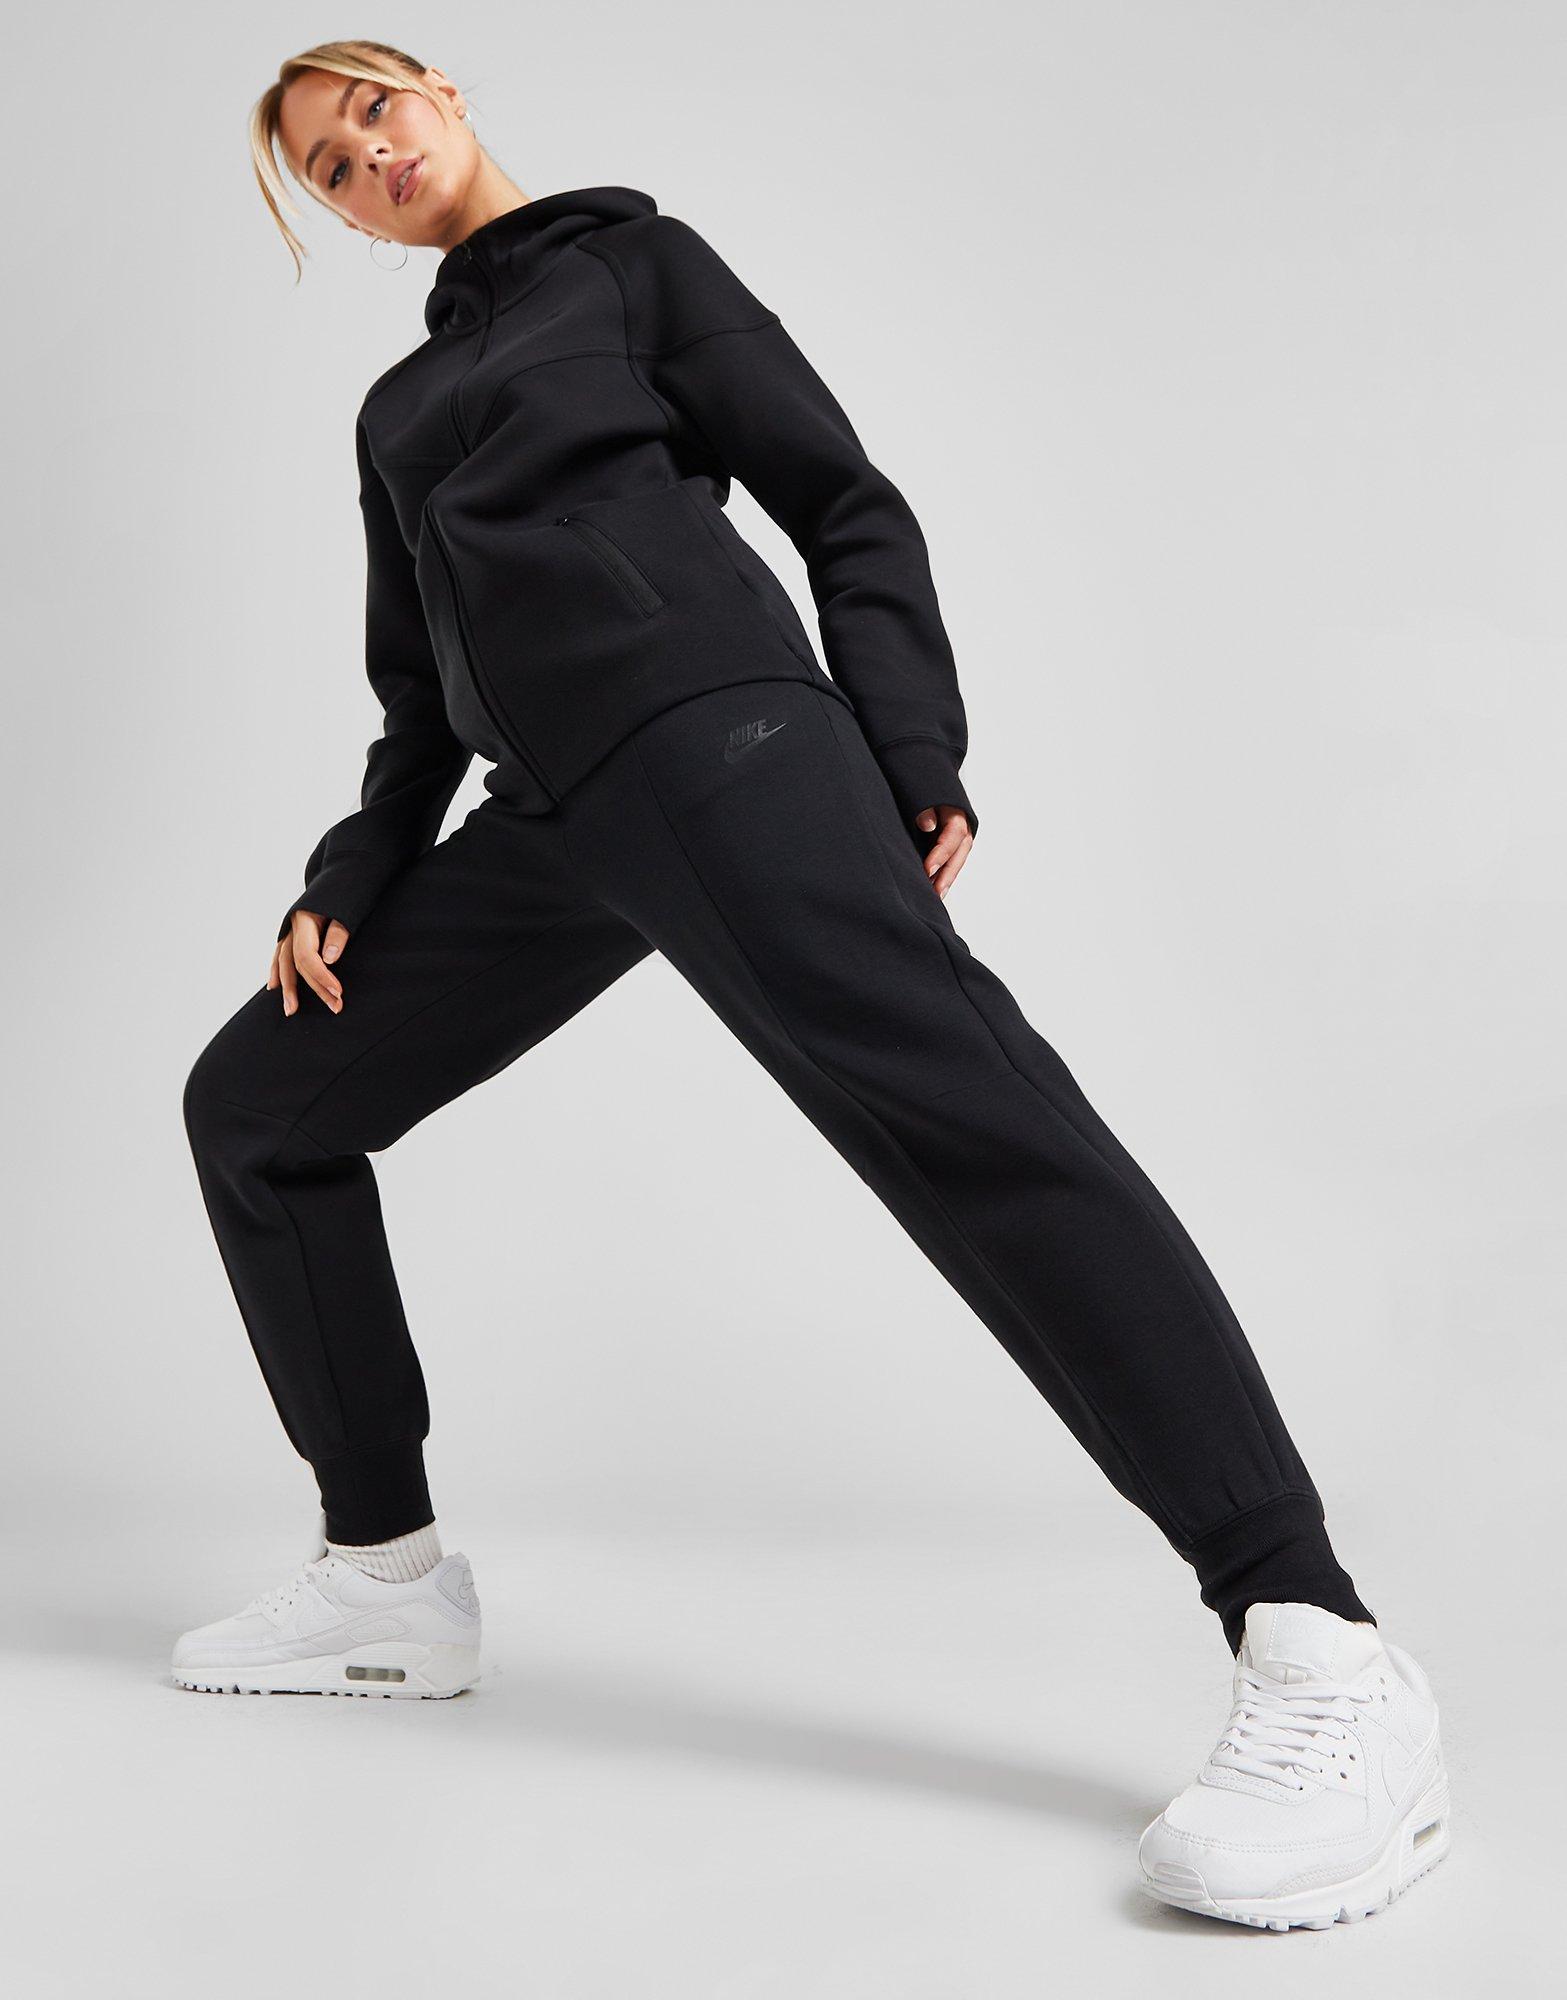 Nike Jogging Tech Fleece Grande Taille Femme Noir- JD Sports France